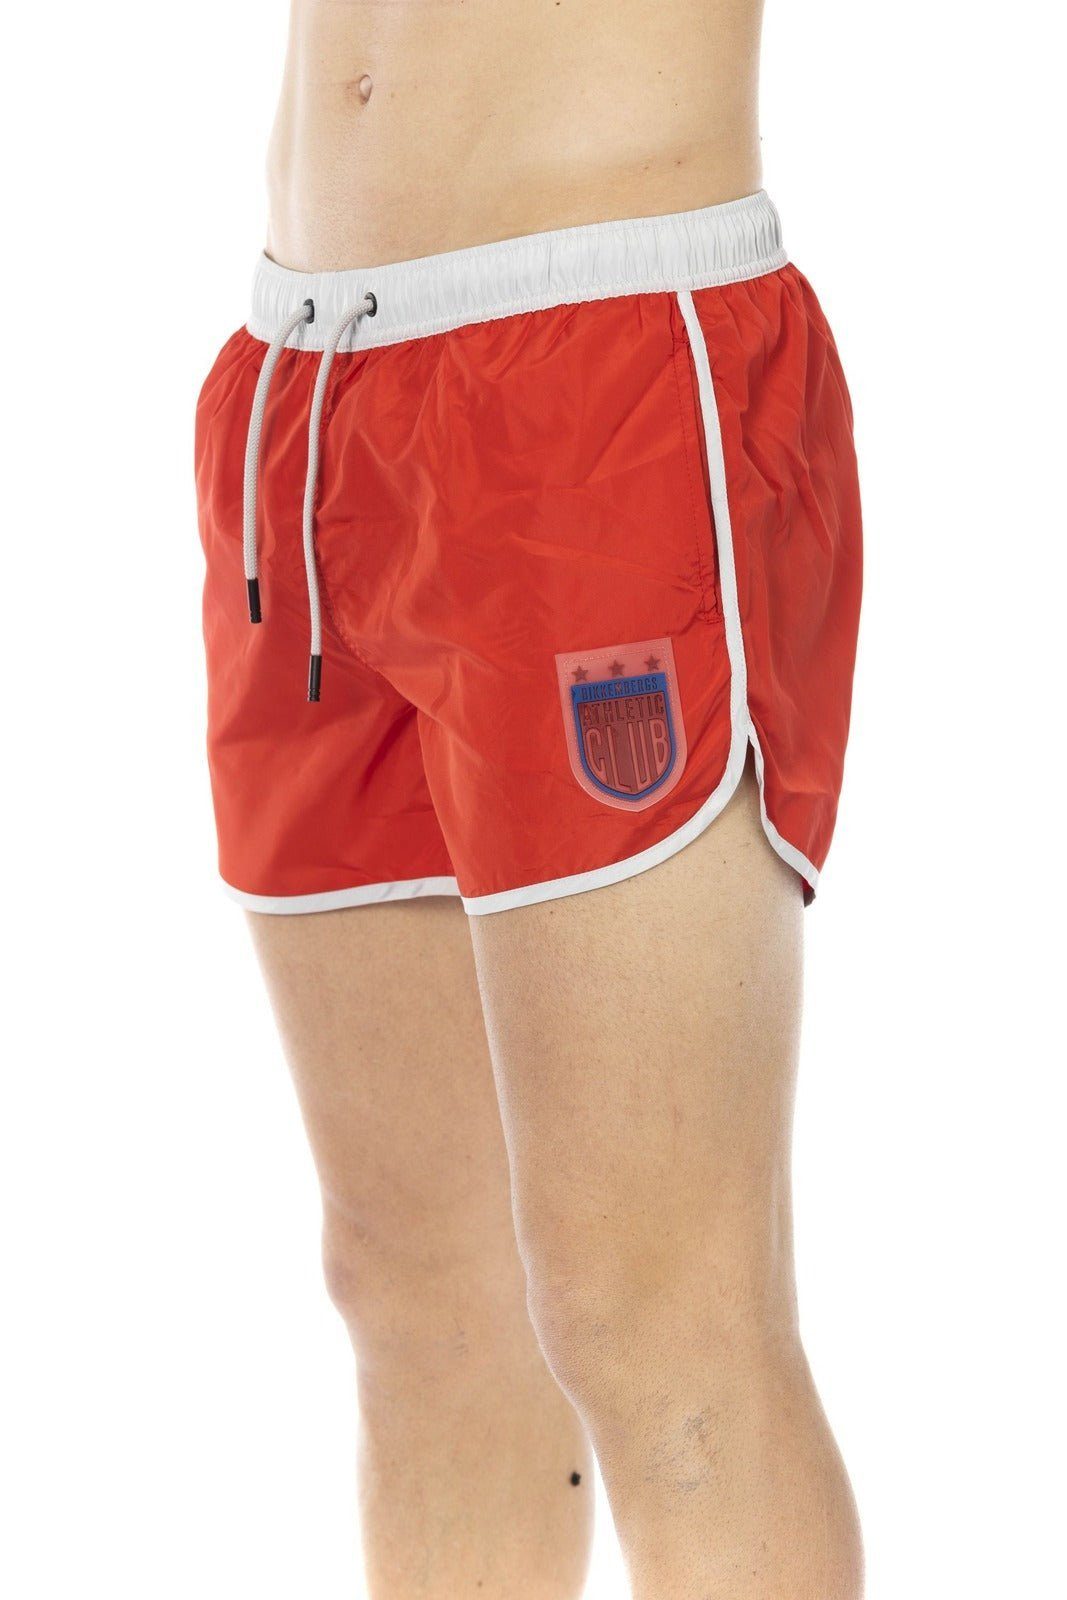 Boxershorts, Boxer-Badehose Beachwear, Bikkembergs Herren deinen Must-Have Rot Sommerurlaub für Bikkembergs